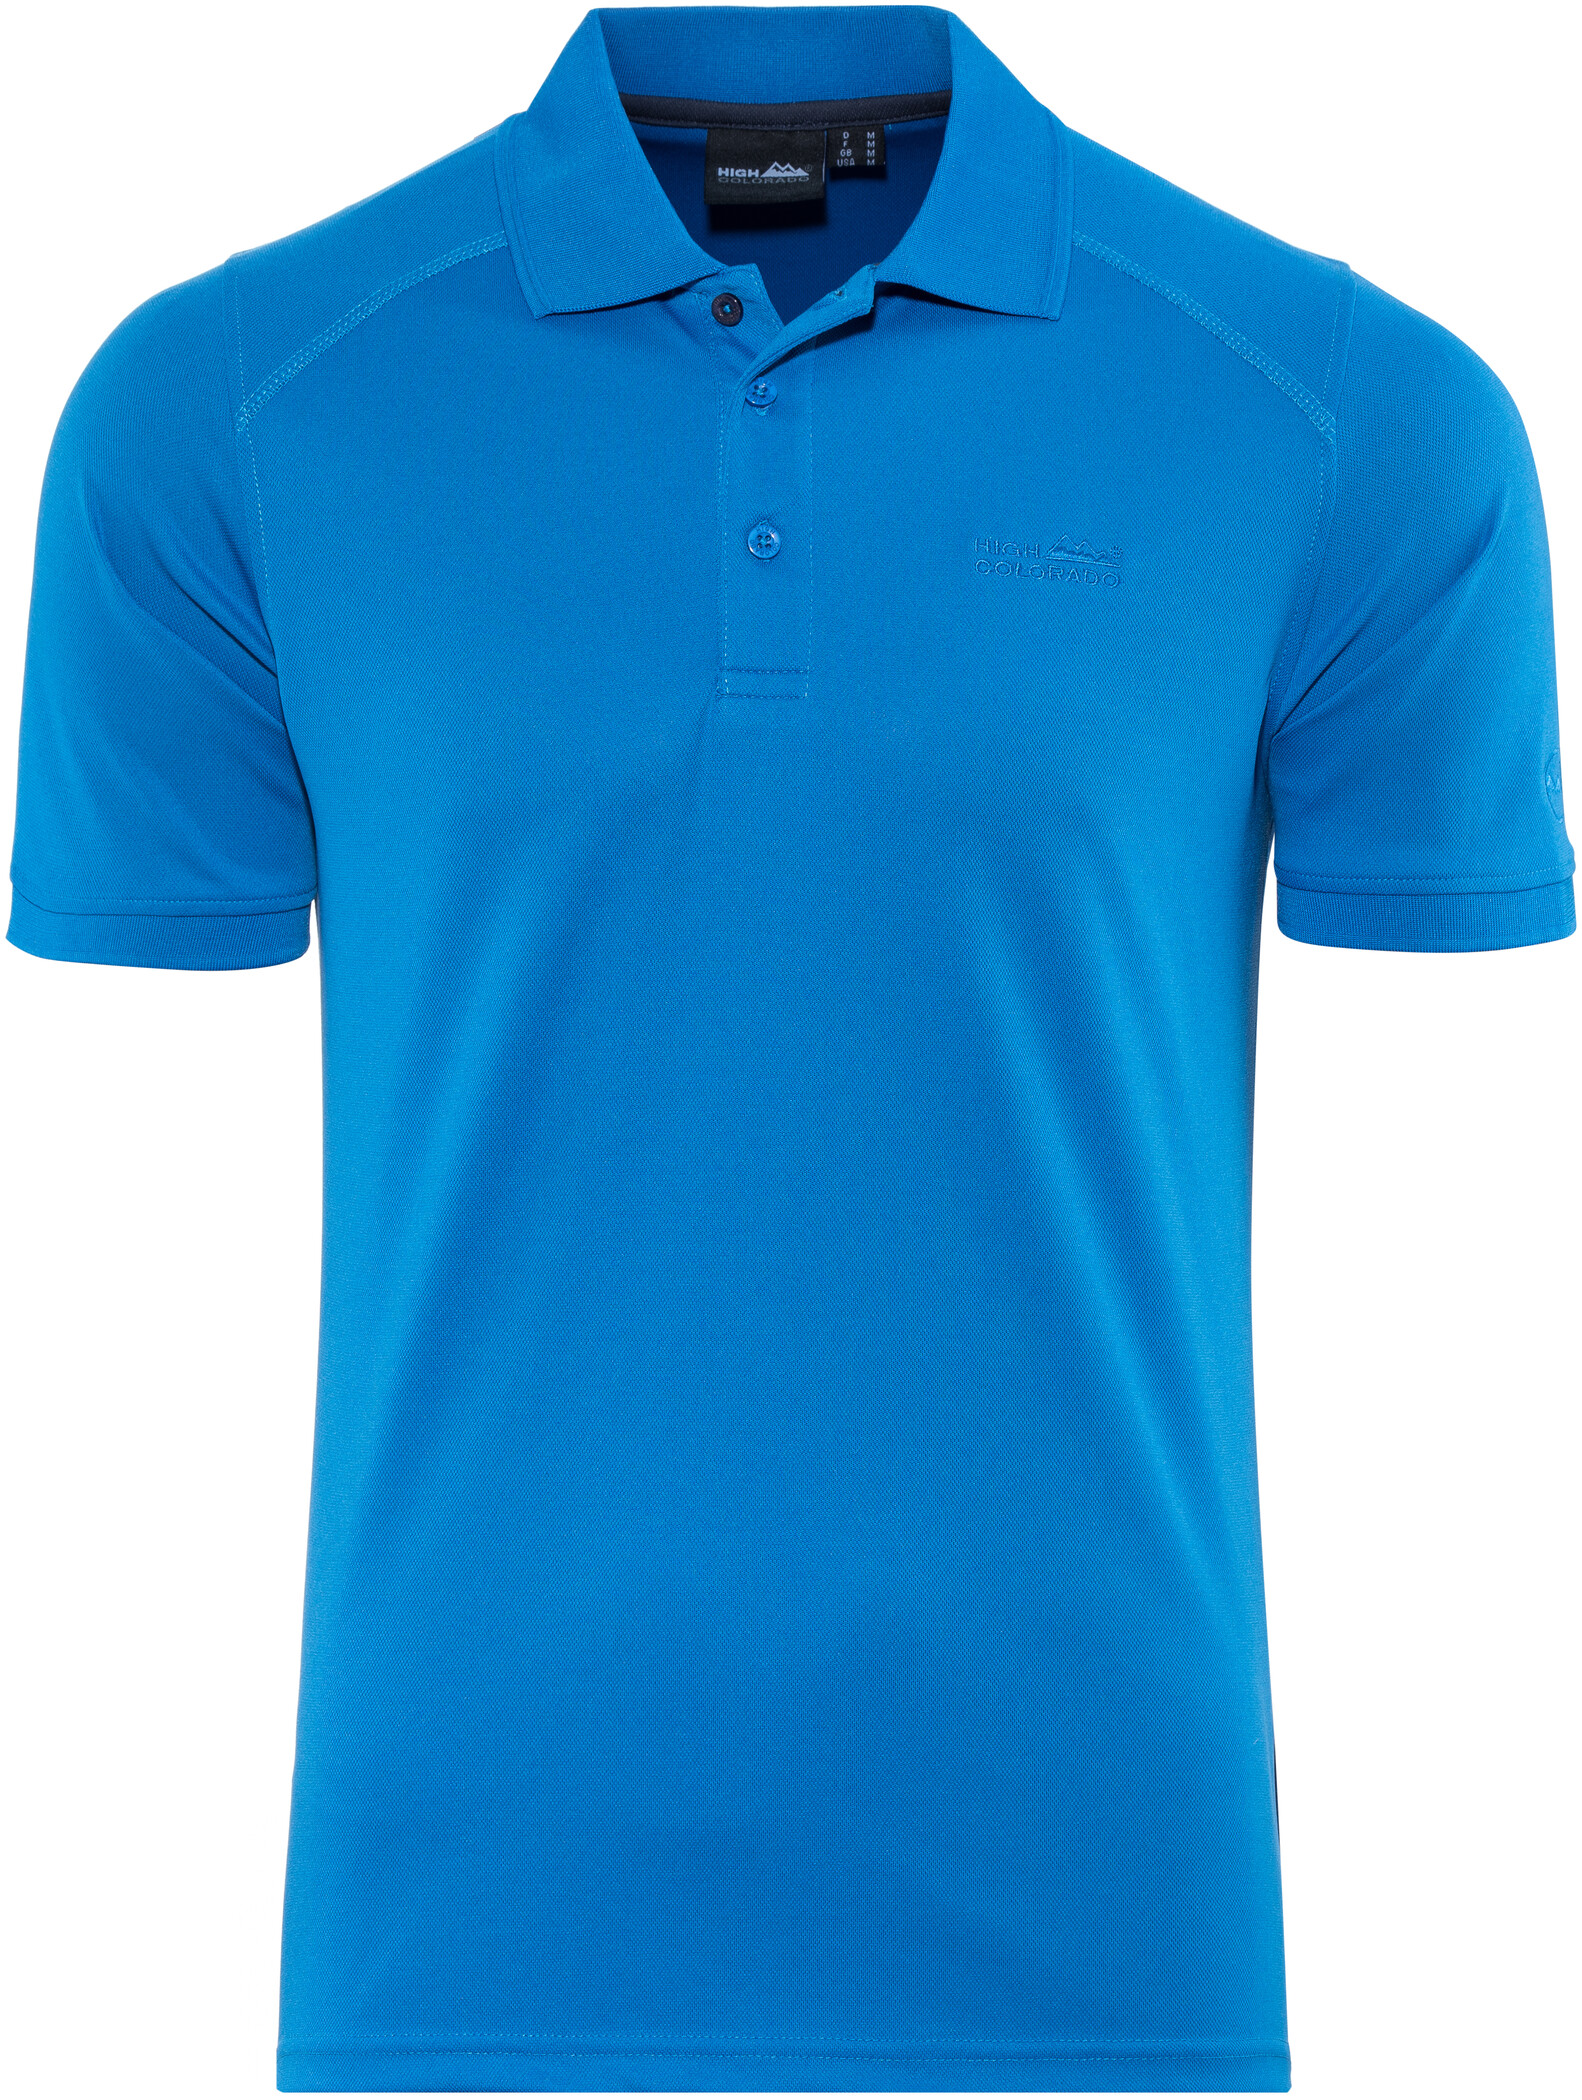 Made in EU bügelfrei und atmungsaktiv für Sport und Business Kurzarm-Hemd für Männer mit Knopfleiste agon Herren Pique Polo-Shirt 